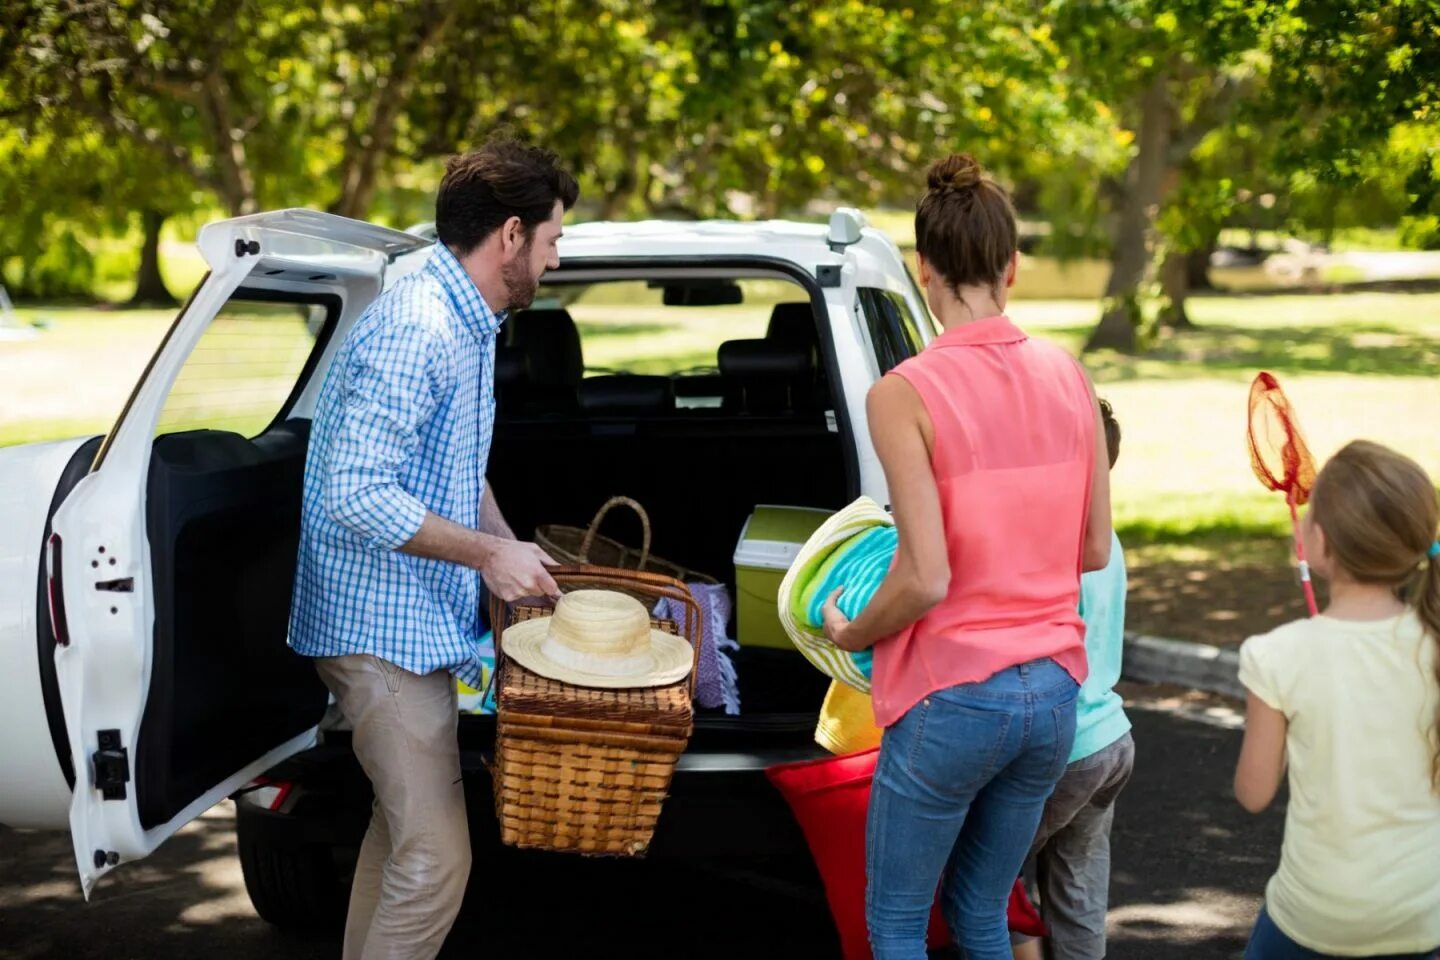 Items car. Пикник в багажнике. Пикник в машине. Машина на пикник загруженная. Семейные вещи.